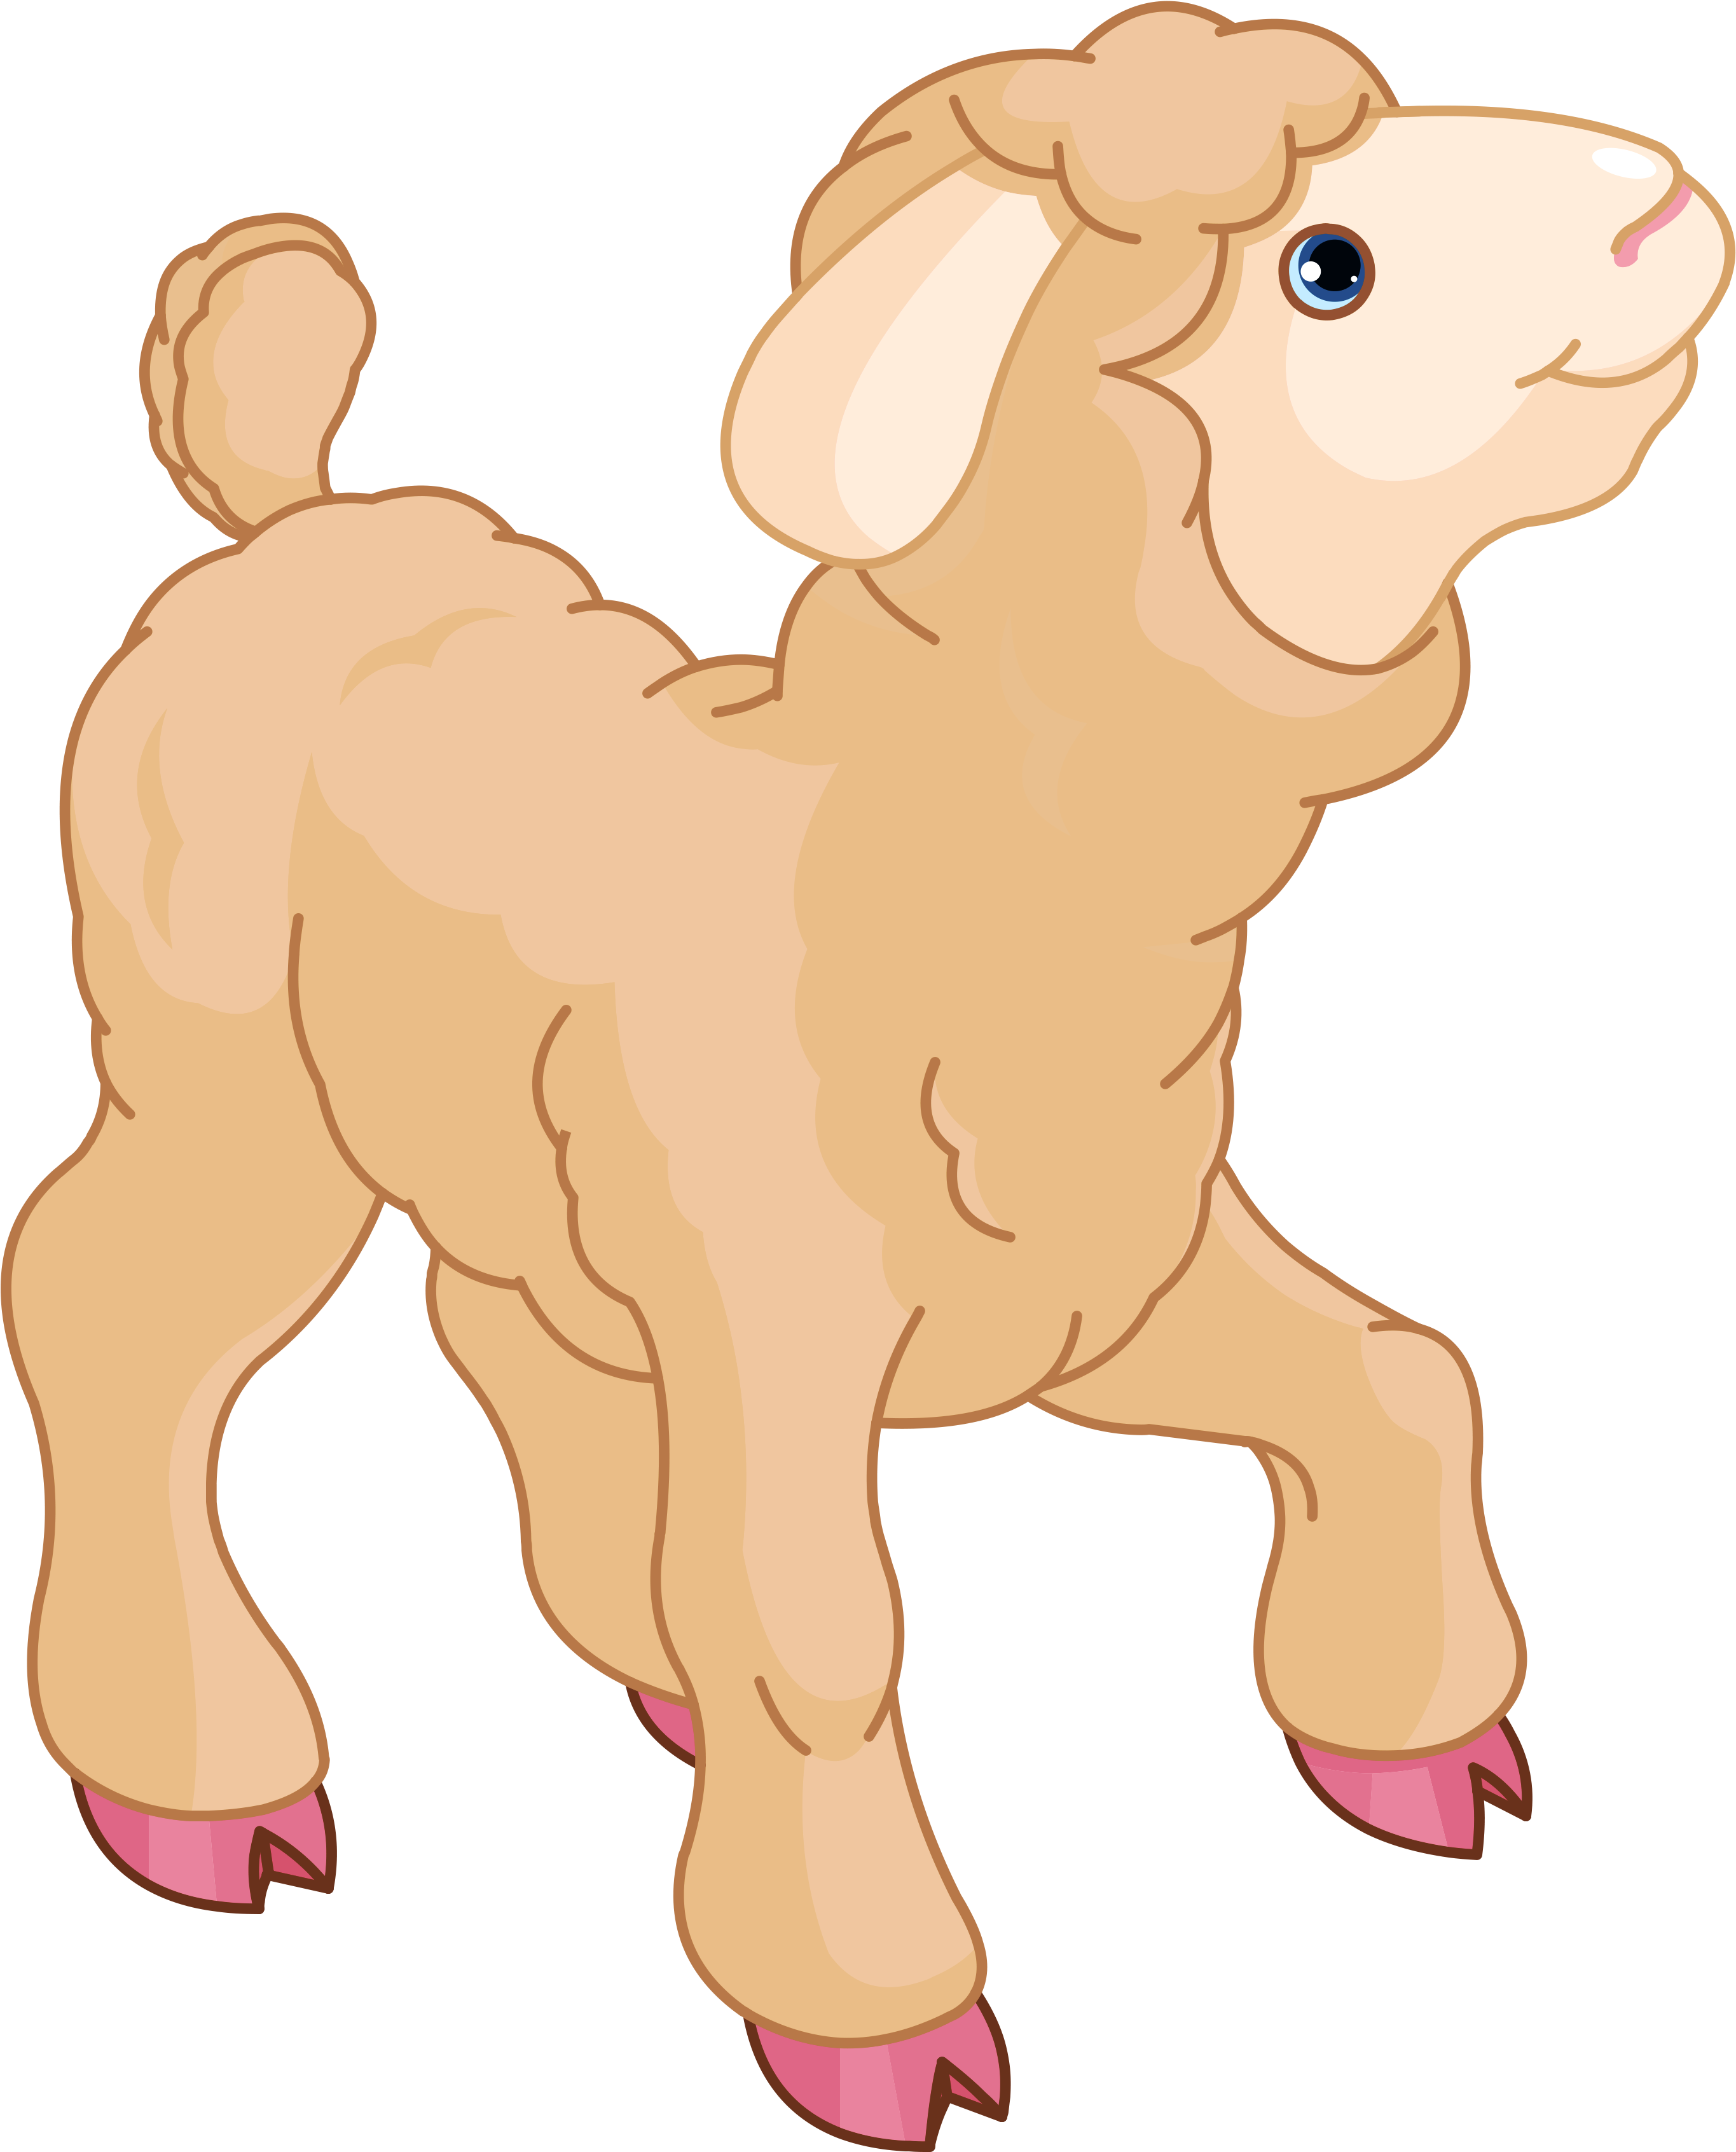 A Cartoon Of A Lamb